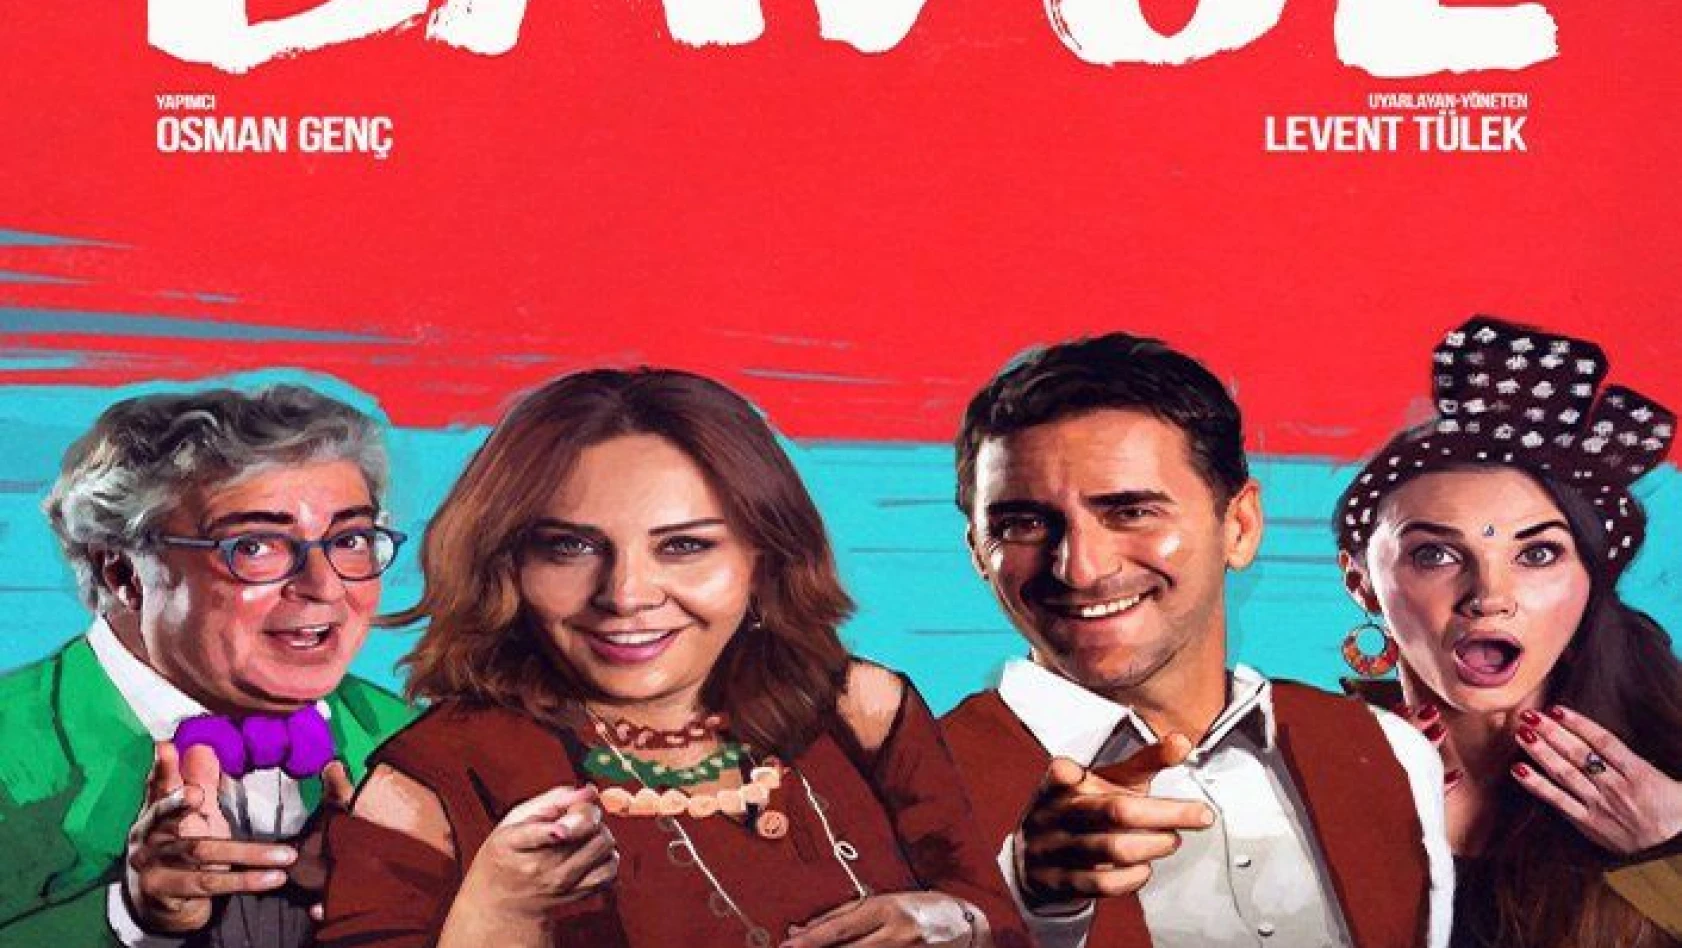 Kahkaha dolu yeni tiyatro oyunu 'bavul' Kayseri'de